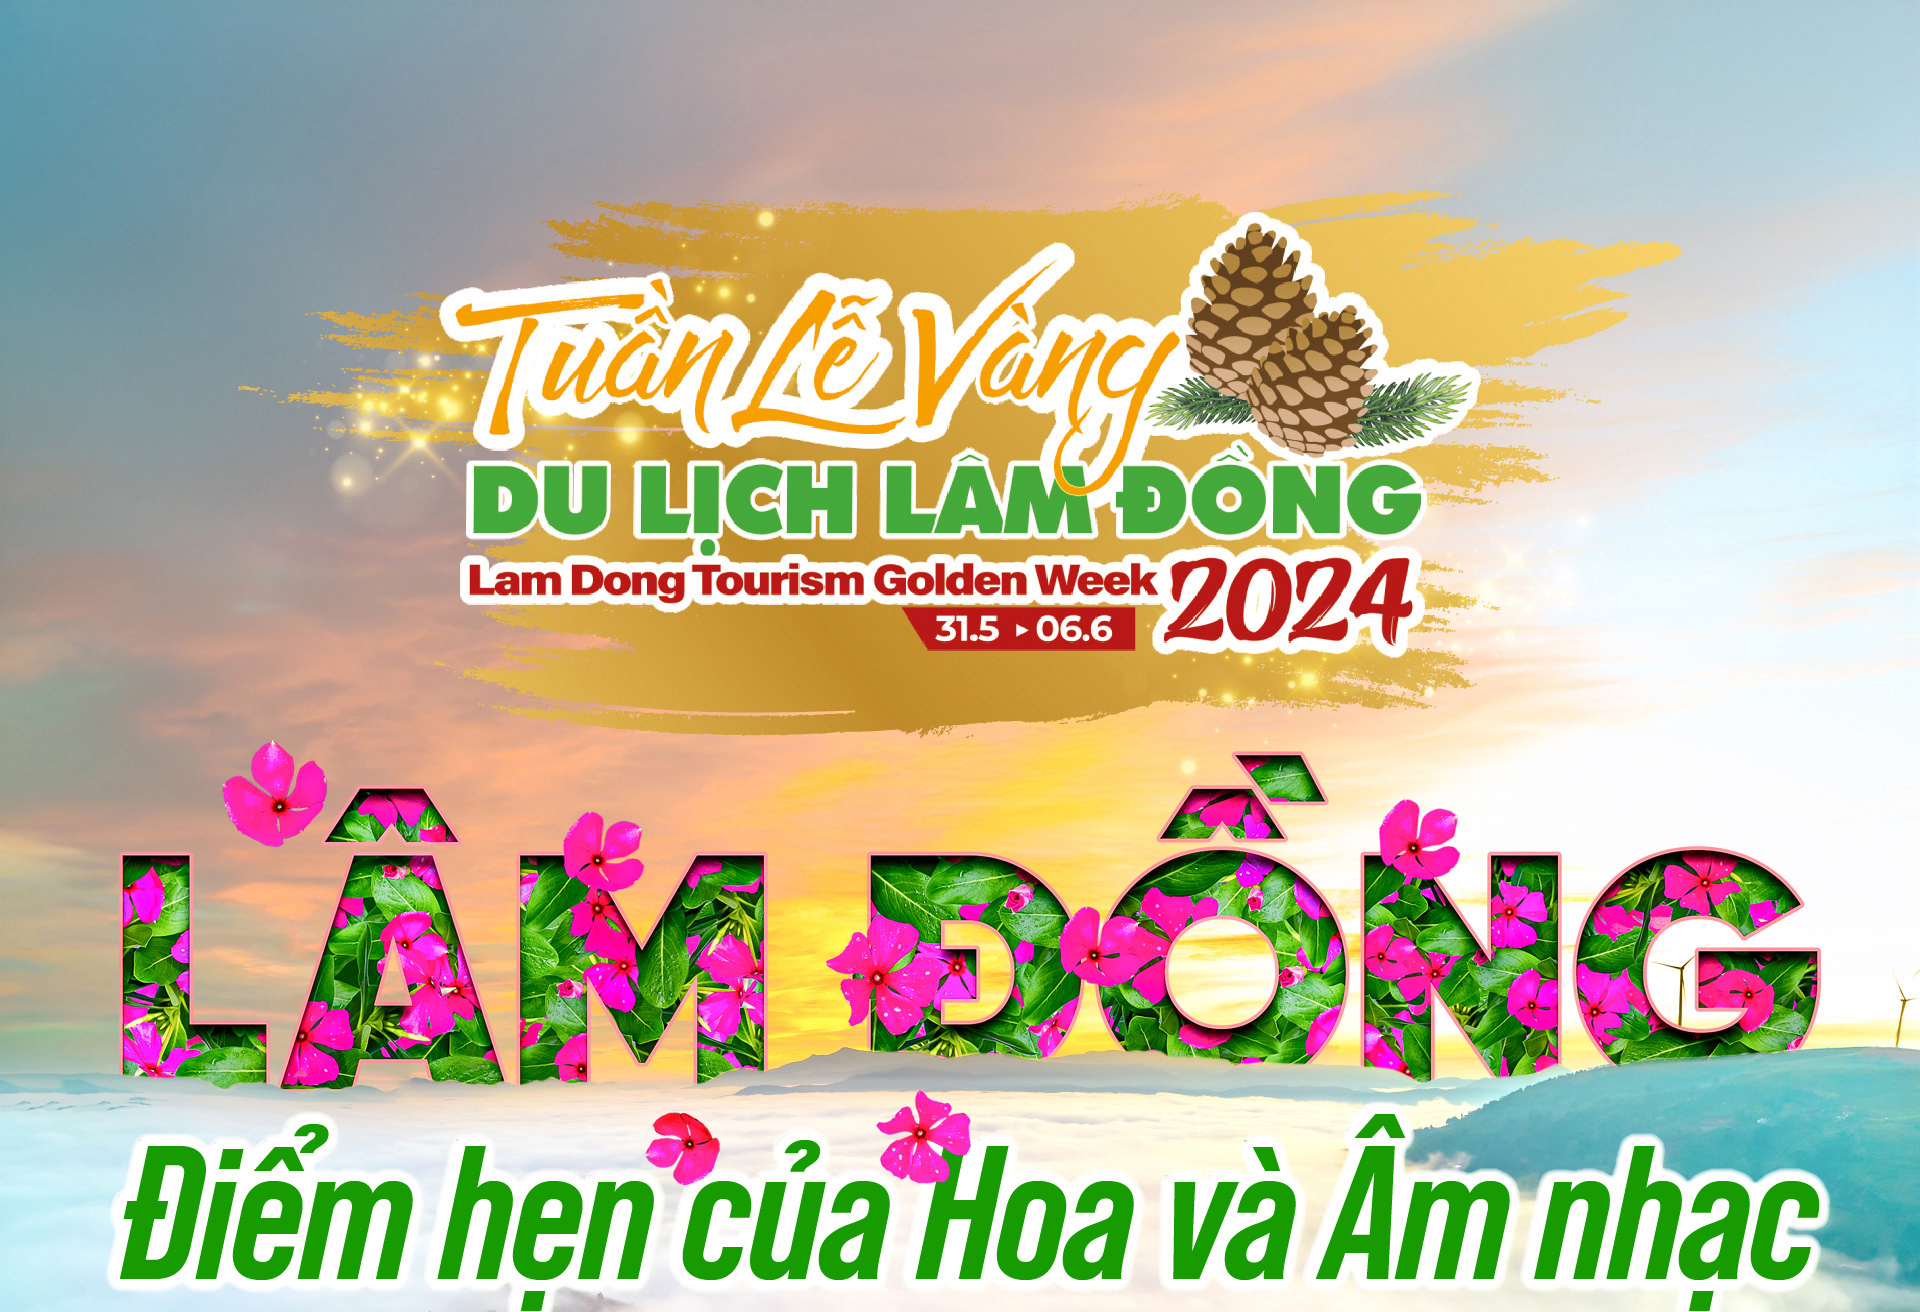 Tuần lễ vàng Du lịch tại Lâm Đồng với nhiều chương trình khuyến mãi hấp dẫn cho khách du lịch